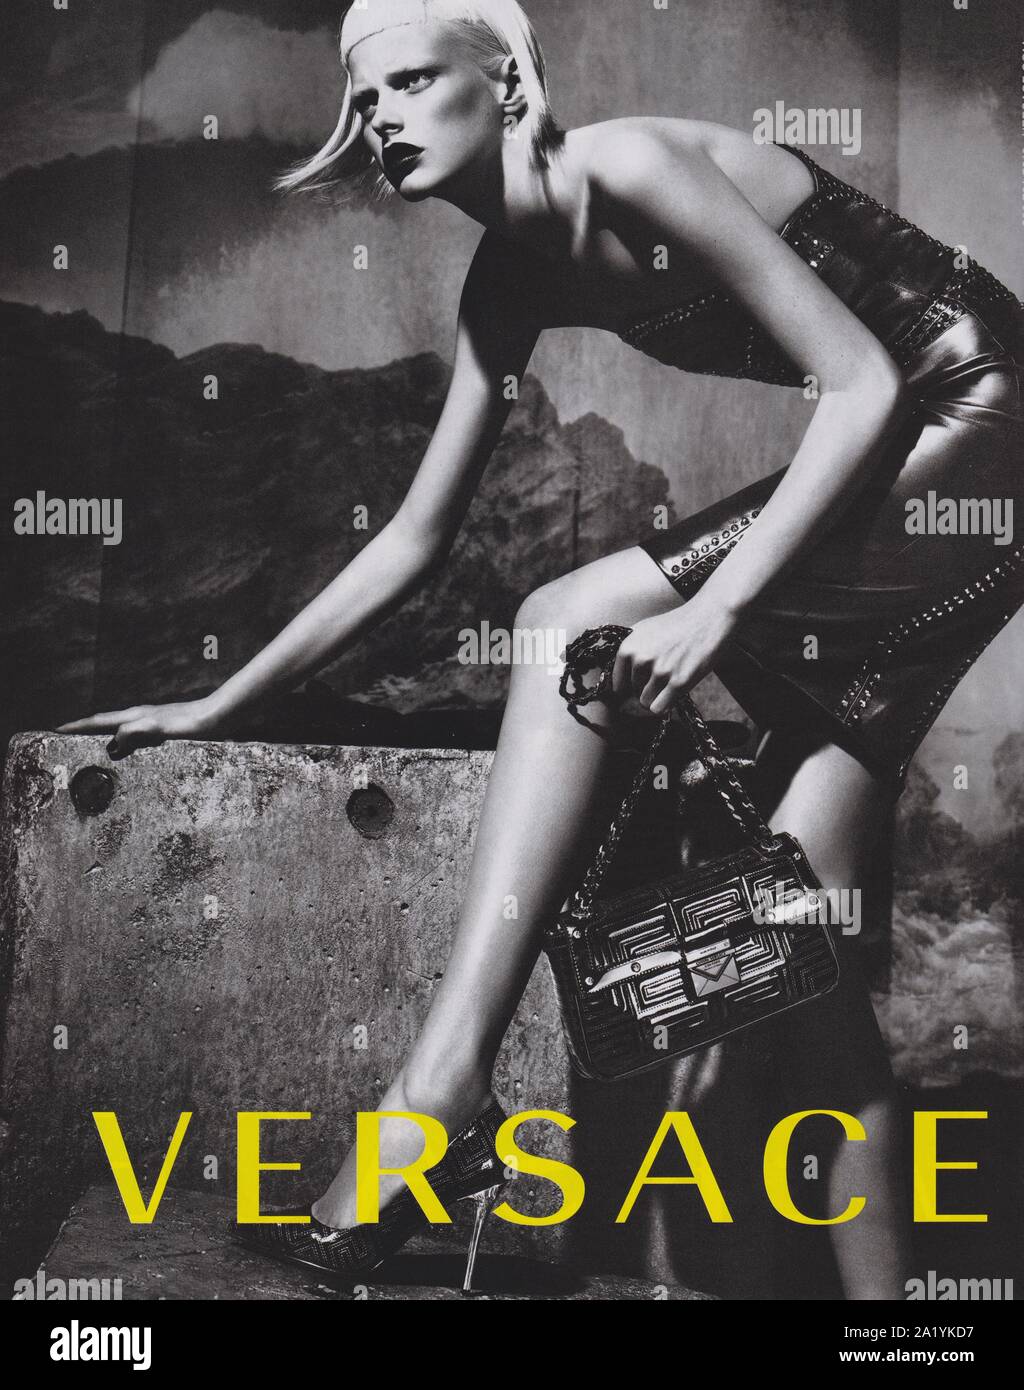 Affiche publicitaire de la maison de couture VERSACE avec Elza Luijendijk dans la version papier du magazine à partir de 2012, année de création publicitaire, publicité VERSACE à partir de 2010s Banque D'Images